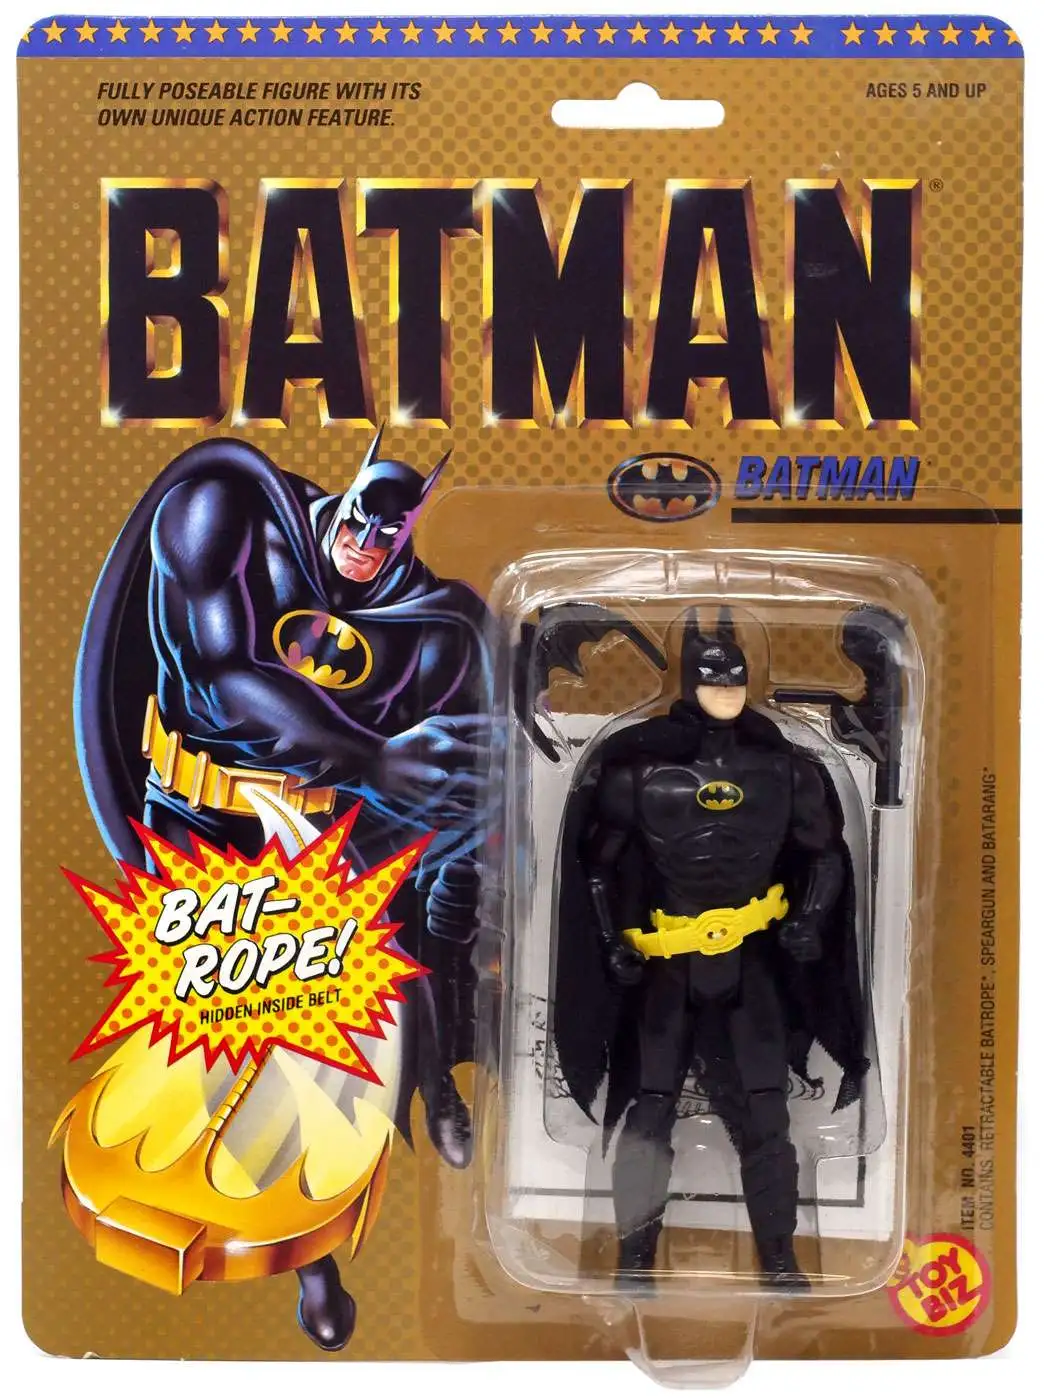 Arriba 100+ imagen batman movie action figures 1989